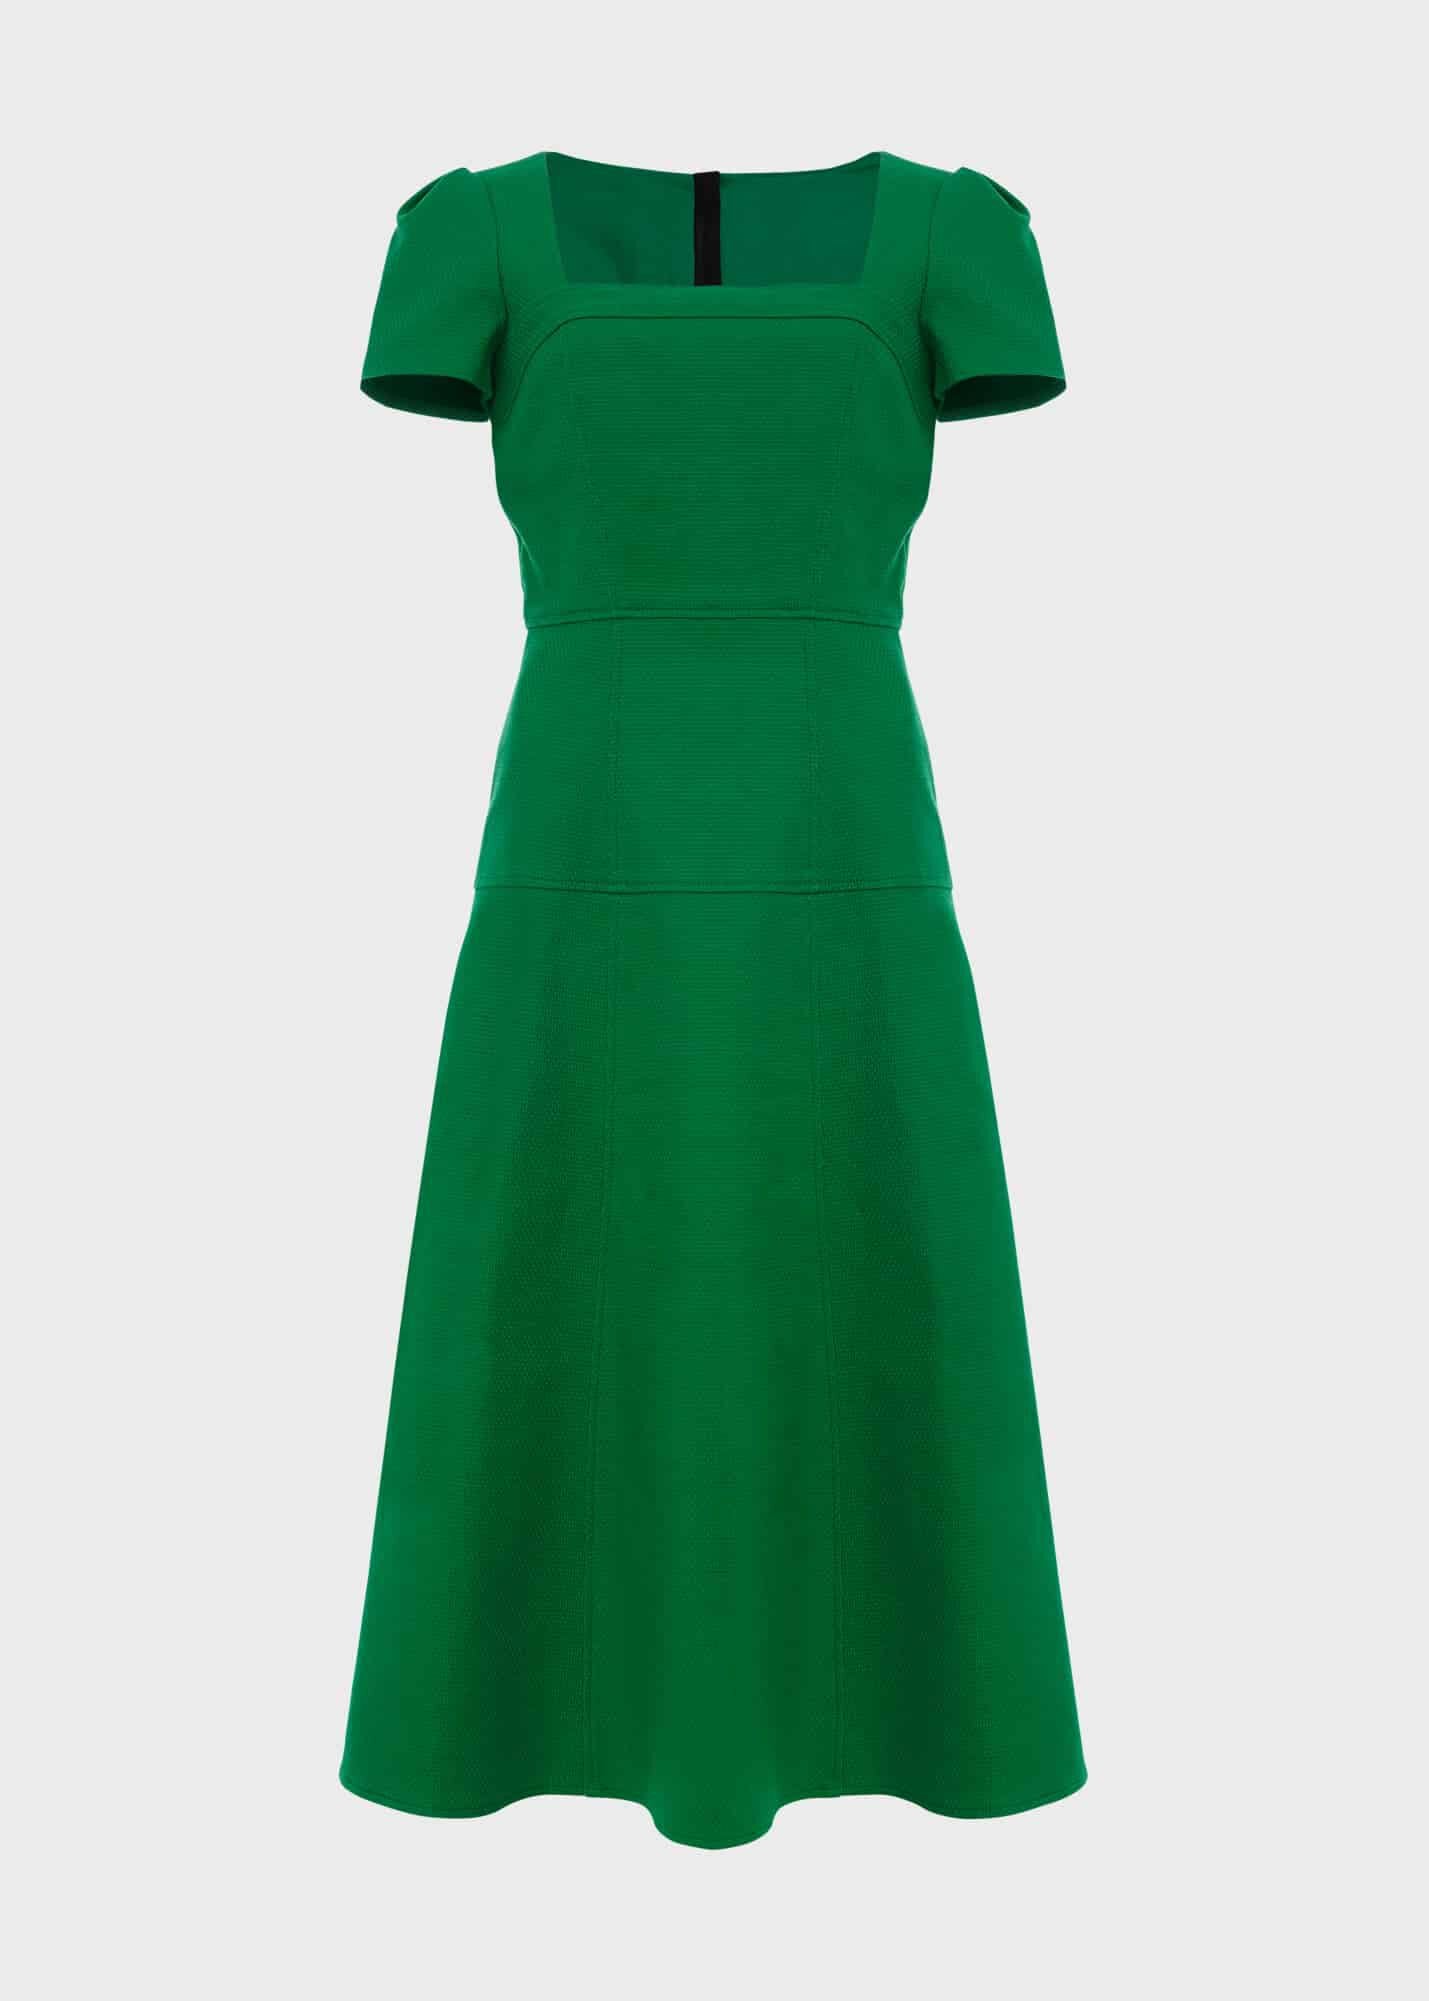 Chatsworth Dress 0124/5287/9083l00 Green